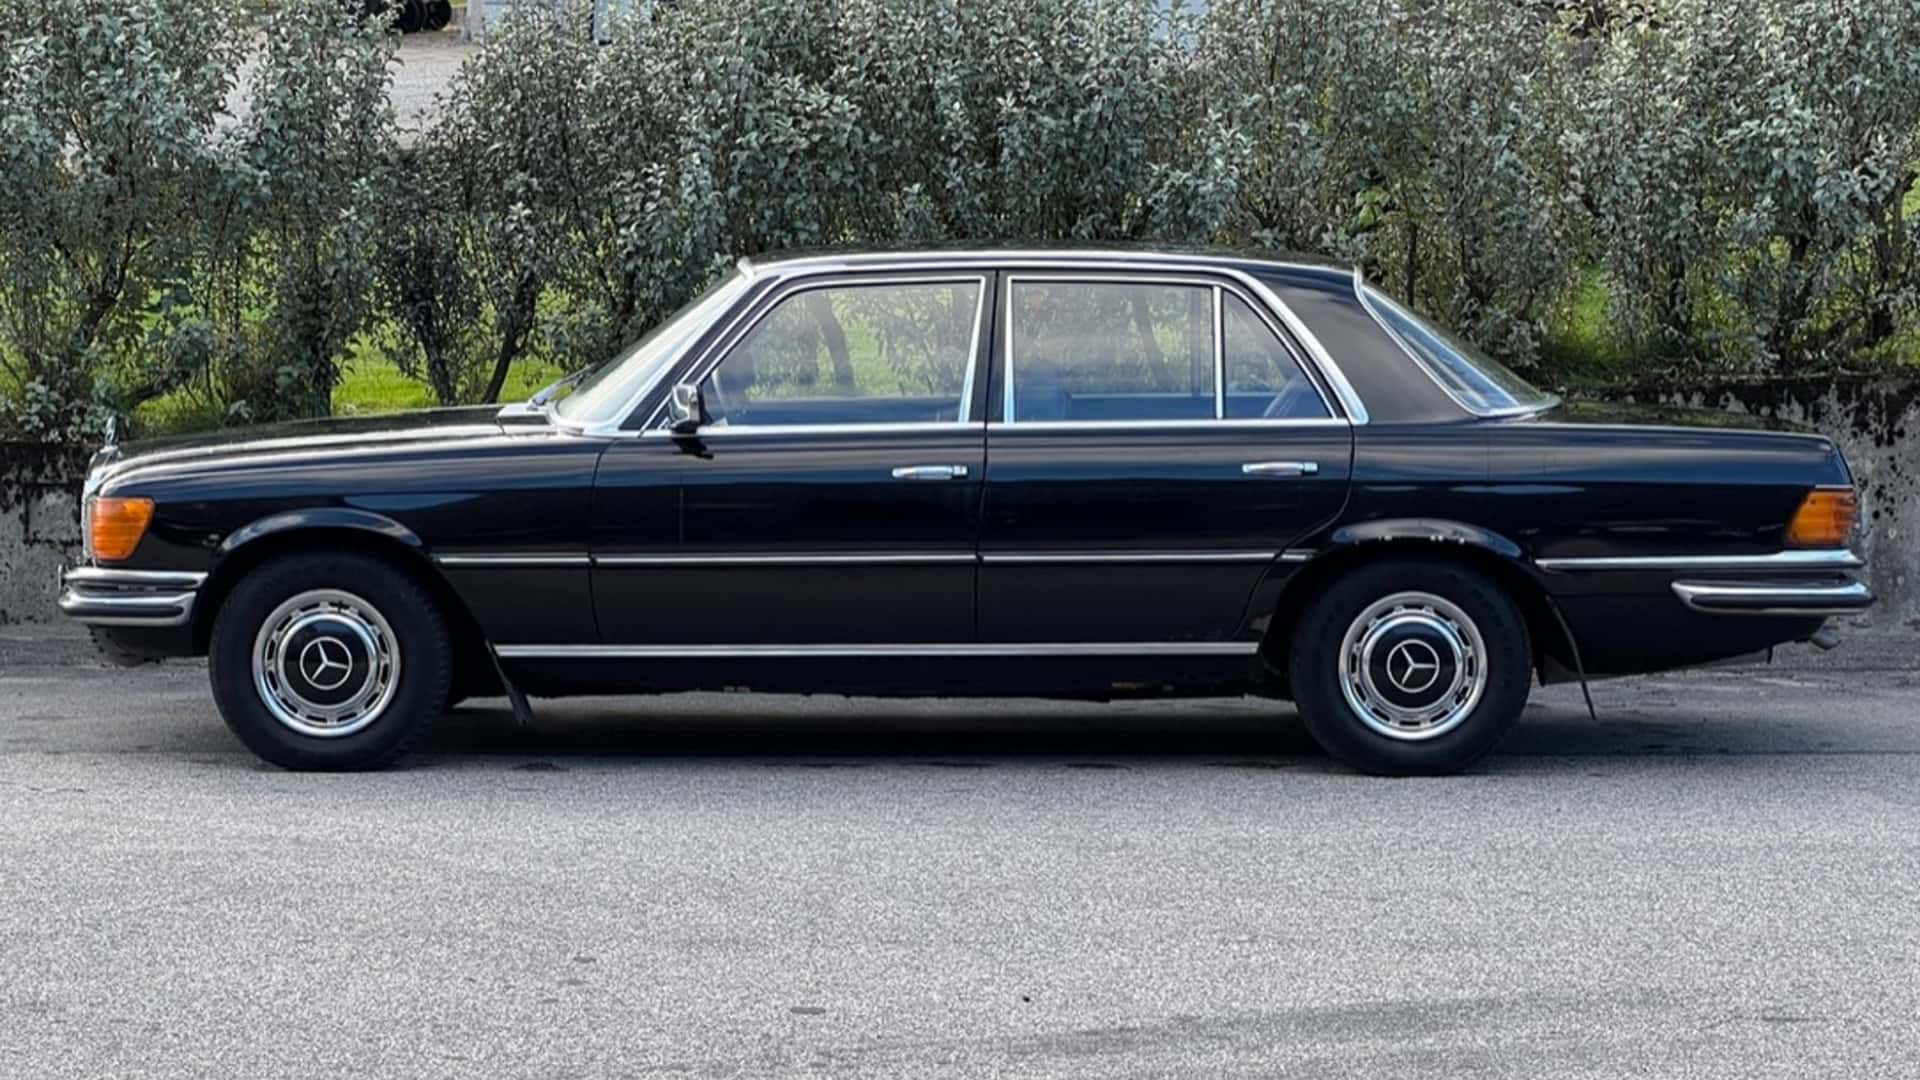 سيارة مرسيدس اس كلاس 1973 كانت مملوكة لملك السويد معروضة للبيع في مزاد 1